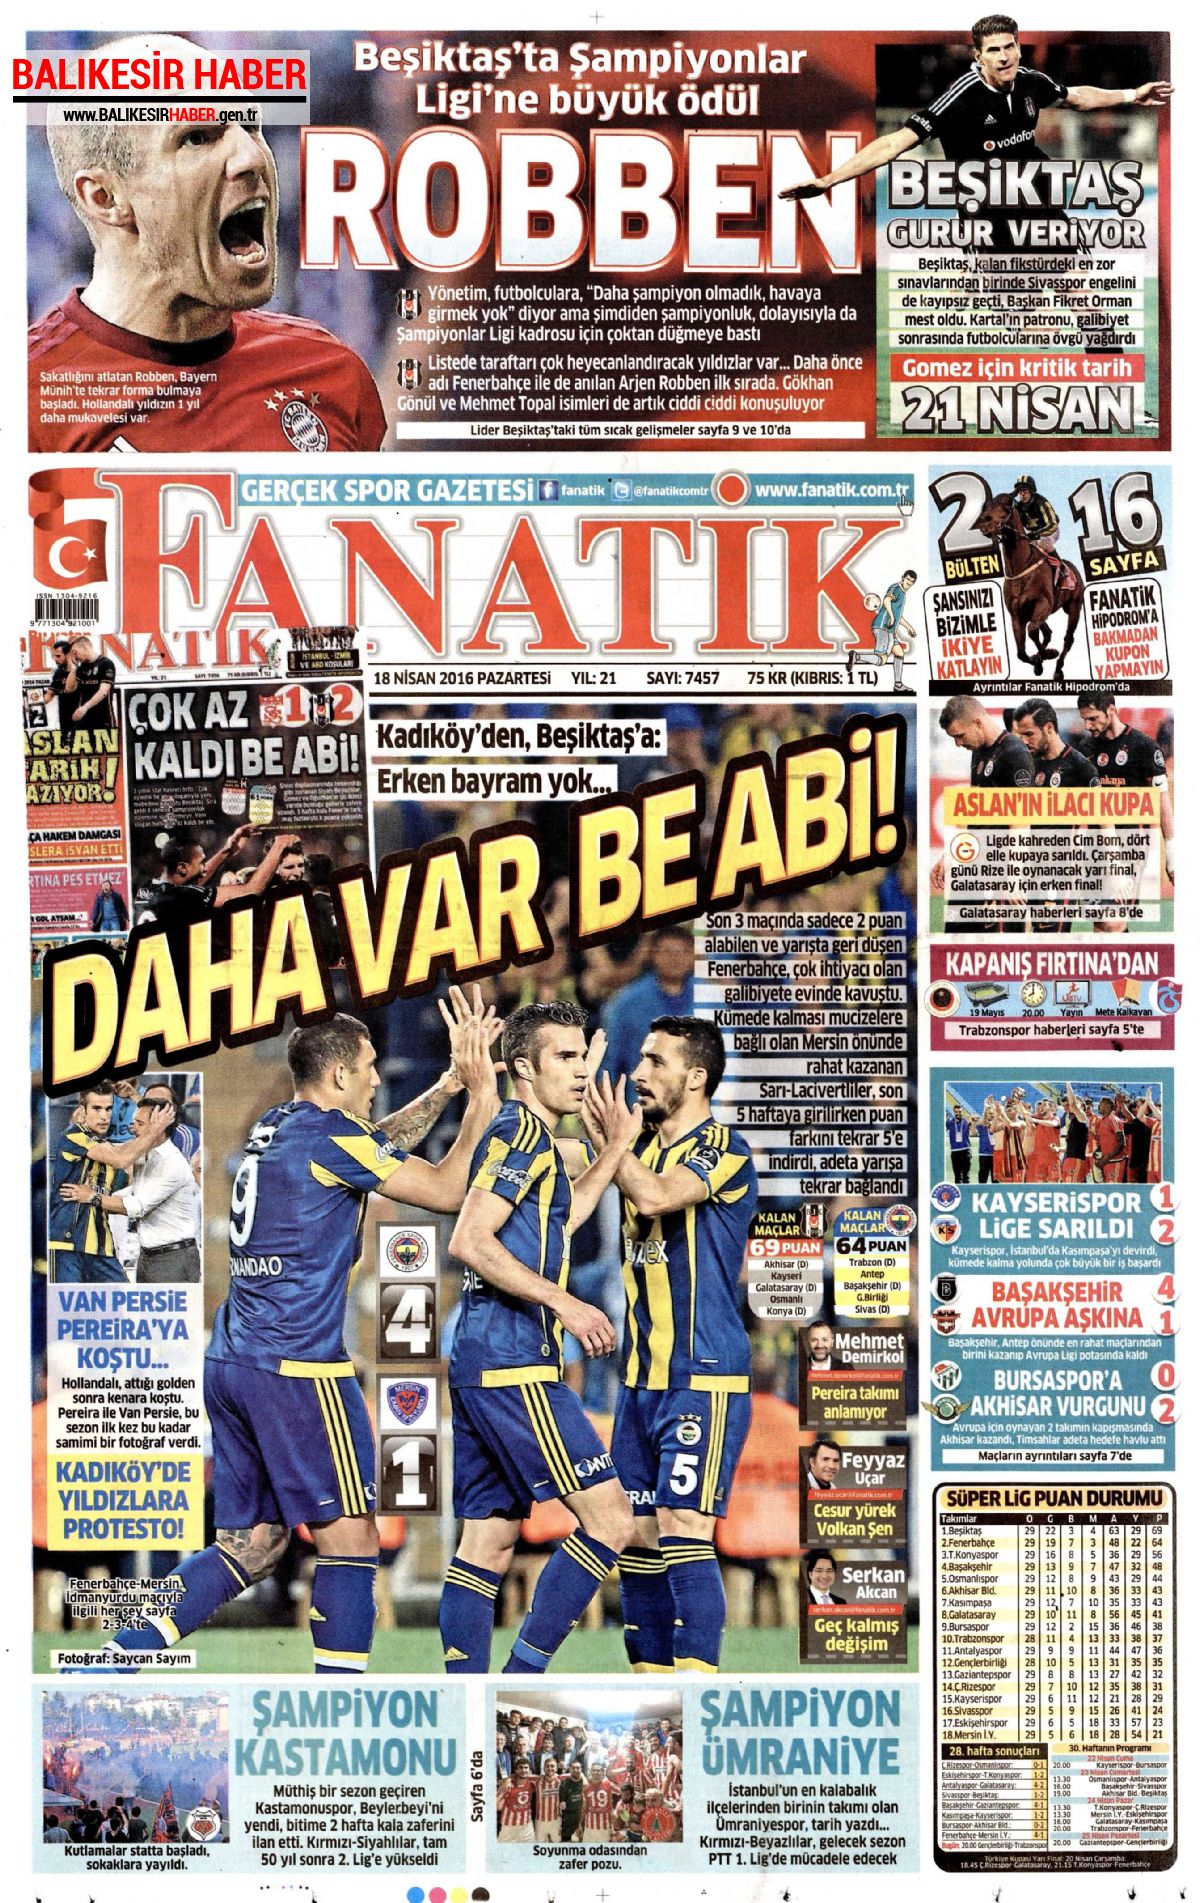 Fanatik Gazetesi 18 Nisan 2016 Gazete Manşetleri